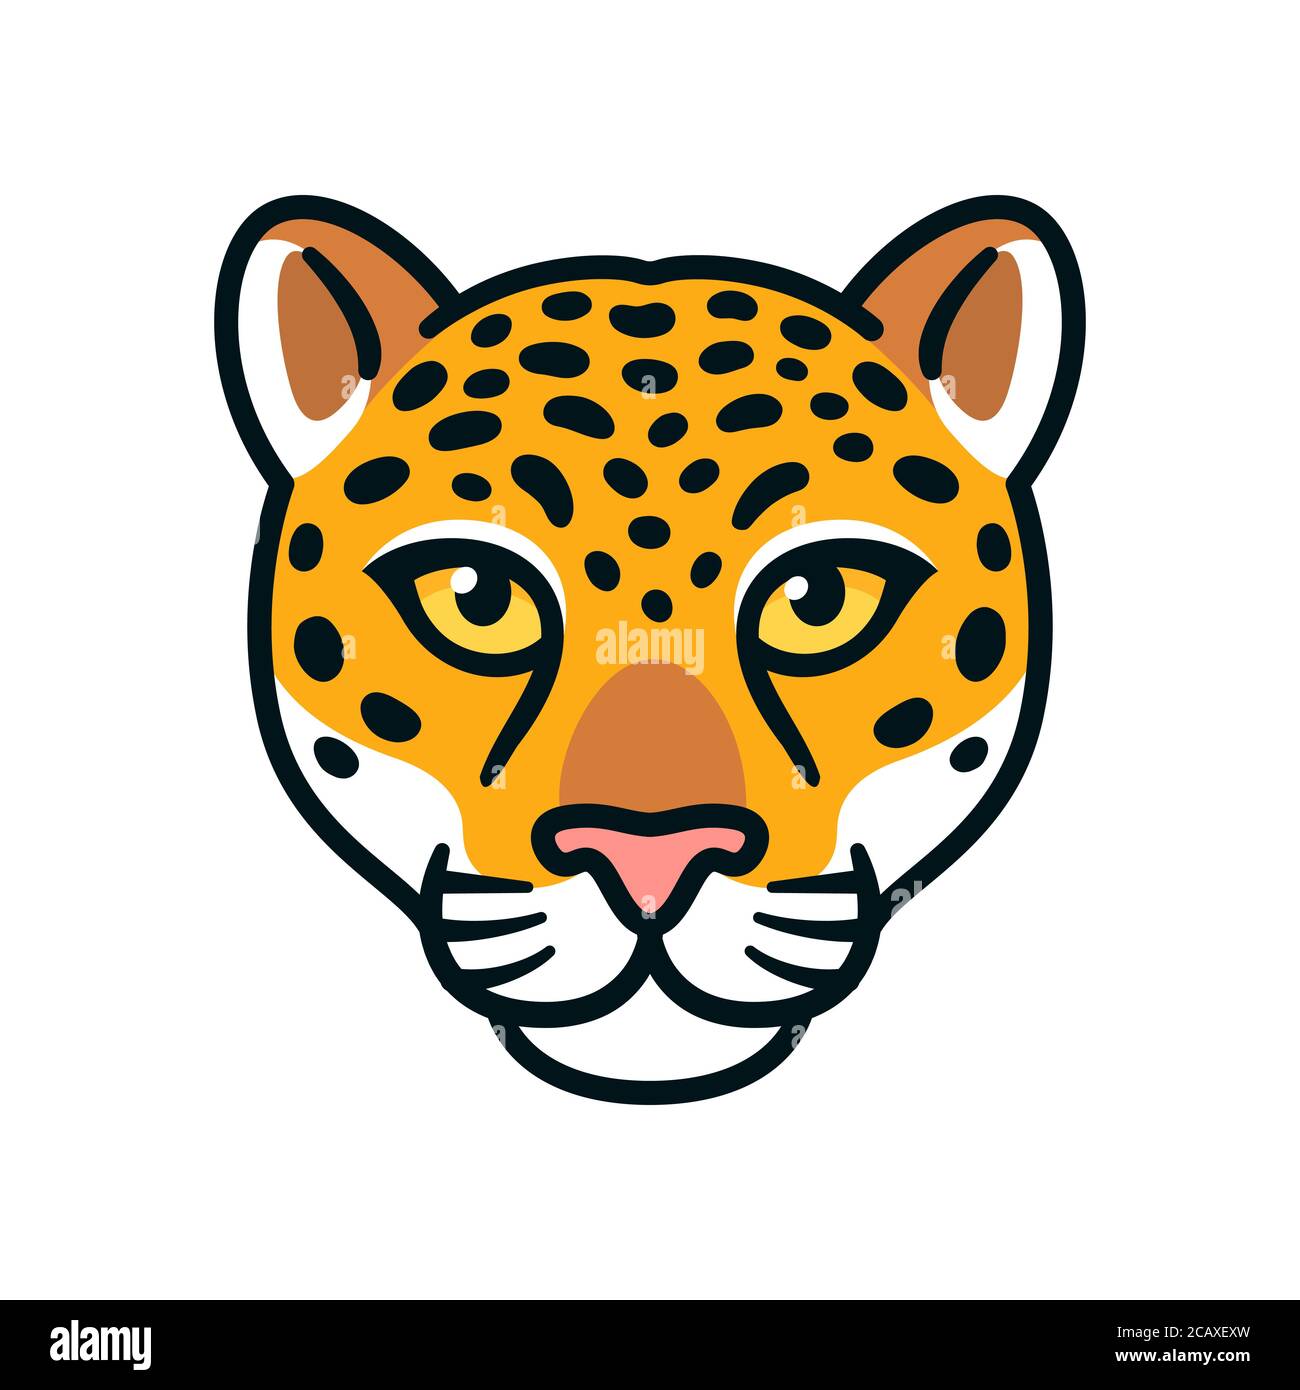 Cartoon jaguar o leopardo testa. Simbolo della faccia del gatto grande selvaggio, mascotte o disegno del logo. Illustrazione vettoriale isolata. Illustrazione Vettoriale